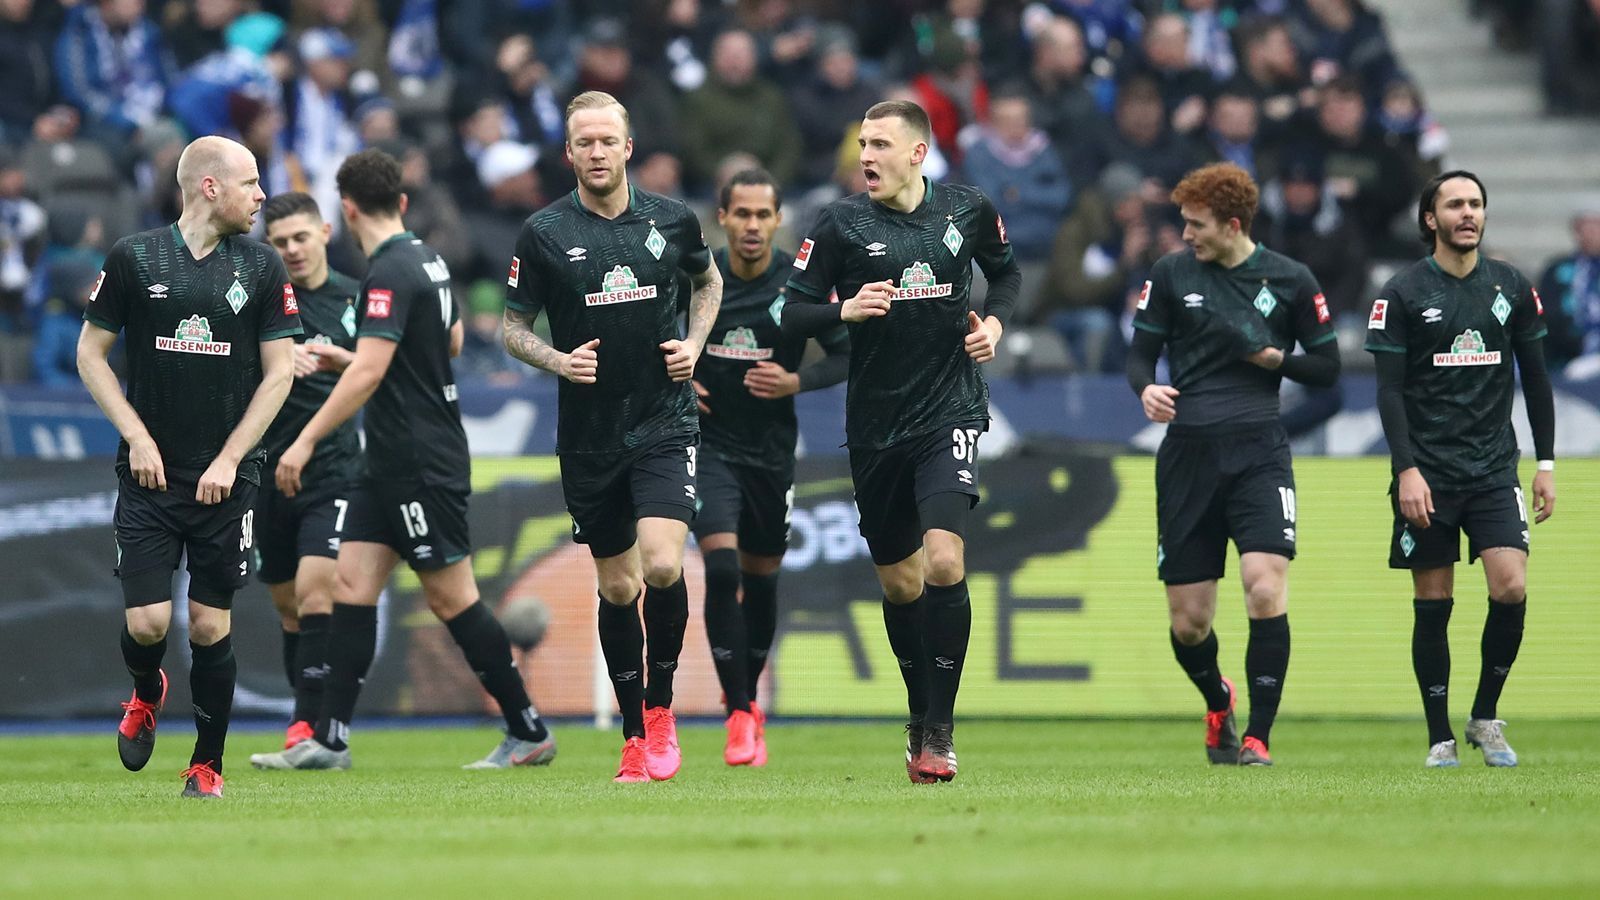 
                <strong>Platz 17: SV Werder Bremen - 18 Punkte</strong><br>
                Selbst eine Zwei-Tore-Führung wie in Berlin (2:2) reichte dem SV Werder vor der Unterbrechung der Saison nicht, um ein Spiel in der Bundesliga zu gewinnen. Etwas Hoffnung gibt die Tatsache, dass Bremen bisher ein Spiel weniger absolviert hat und gegen Eintracht Frankfurt die Möglichkeit bekommt, nachträglich Punkte einzufahren. Ein weiteres Problem: Der Klub bemängelte den Wettbewerbs-Nachteil, dass man im Gegensatz zu den anderen Klubs bislang nur in Vierergruppen trainieren konnte. Die Bitte um einen Start am 23. Mai wurde aber verneint. Und: Der Blick auf Werder Restprogramm gibt wenig Hoffnung: Leverkusen (H), Freiburg (A), Gladbach (H), Schalke (A), Frankfurt (H, Nachholspiel), Wolfsburg (H), Paderborn (A), Bayern (H), Mainz (A), Köln (H).ran.de-Prognose: Der erste Werder-Abstieg seit 1980 rückt immer näher. Die Bremer wirken verunschichert, spielen wie der klassische Absteiger. Schon ein Sprung auf Platz 16 würde einem kleinen Wunder gleichen.
              